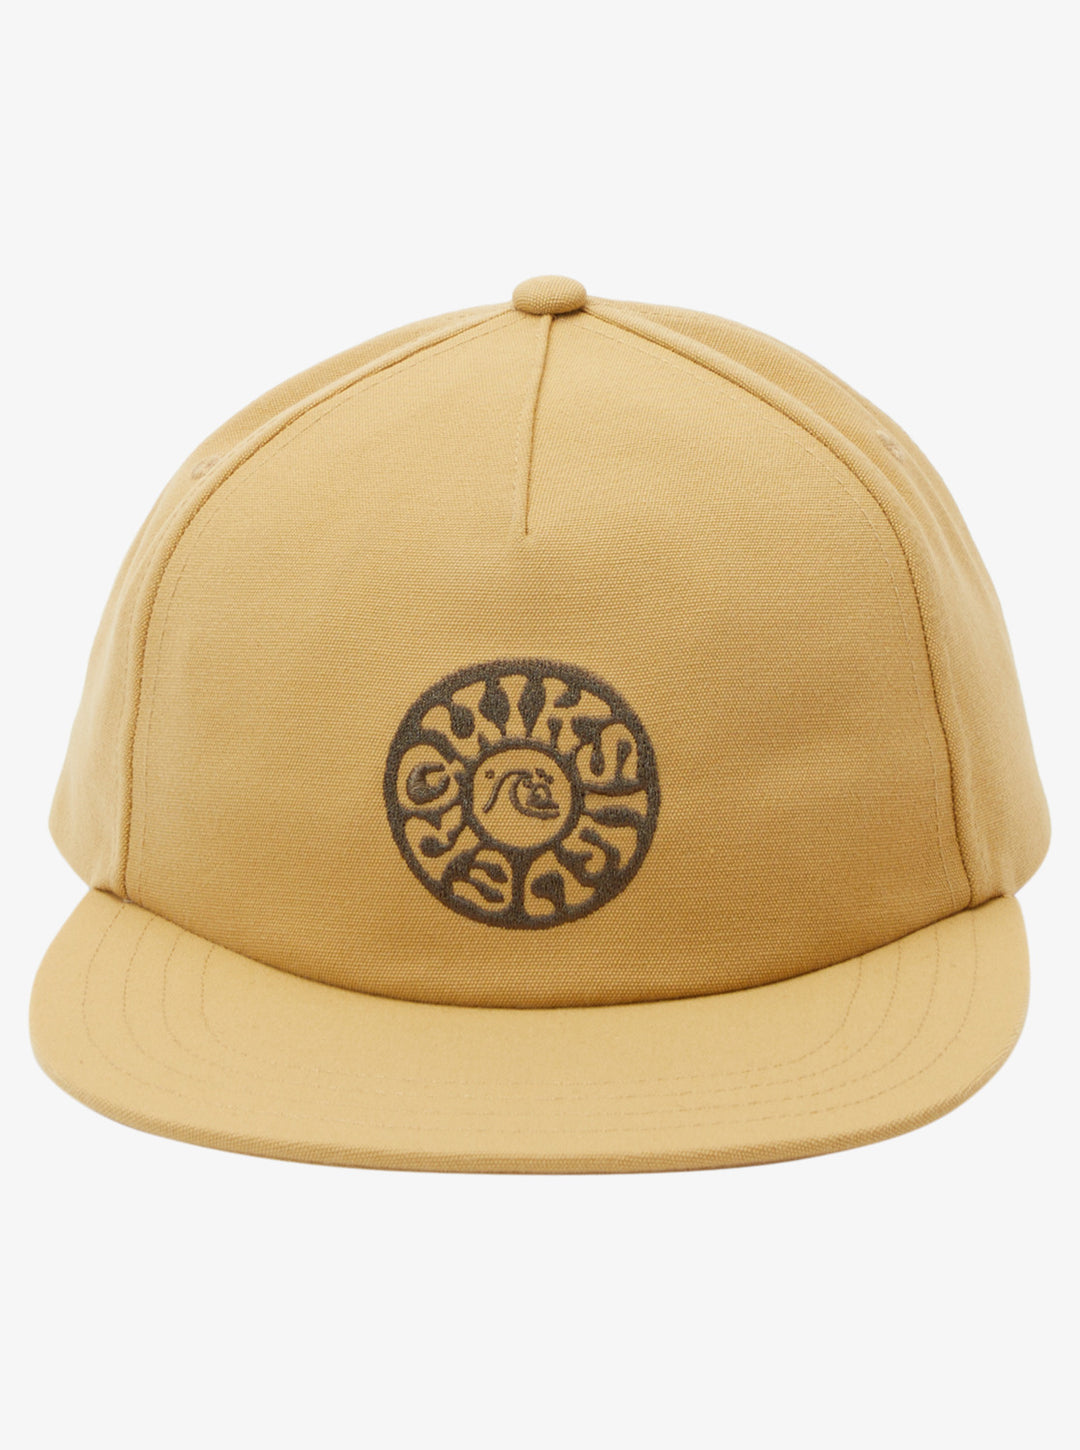 Quiksilver Earth Tripper Snapback Hat - Mustard - Sun Diego Boardshop